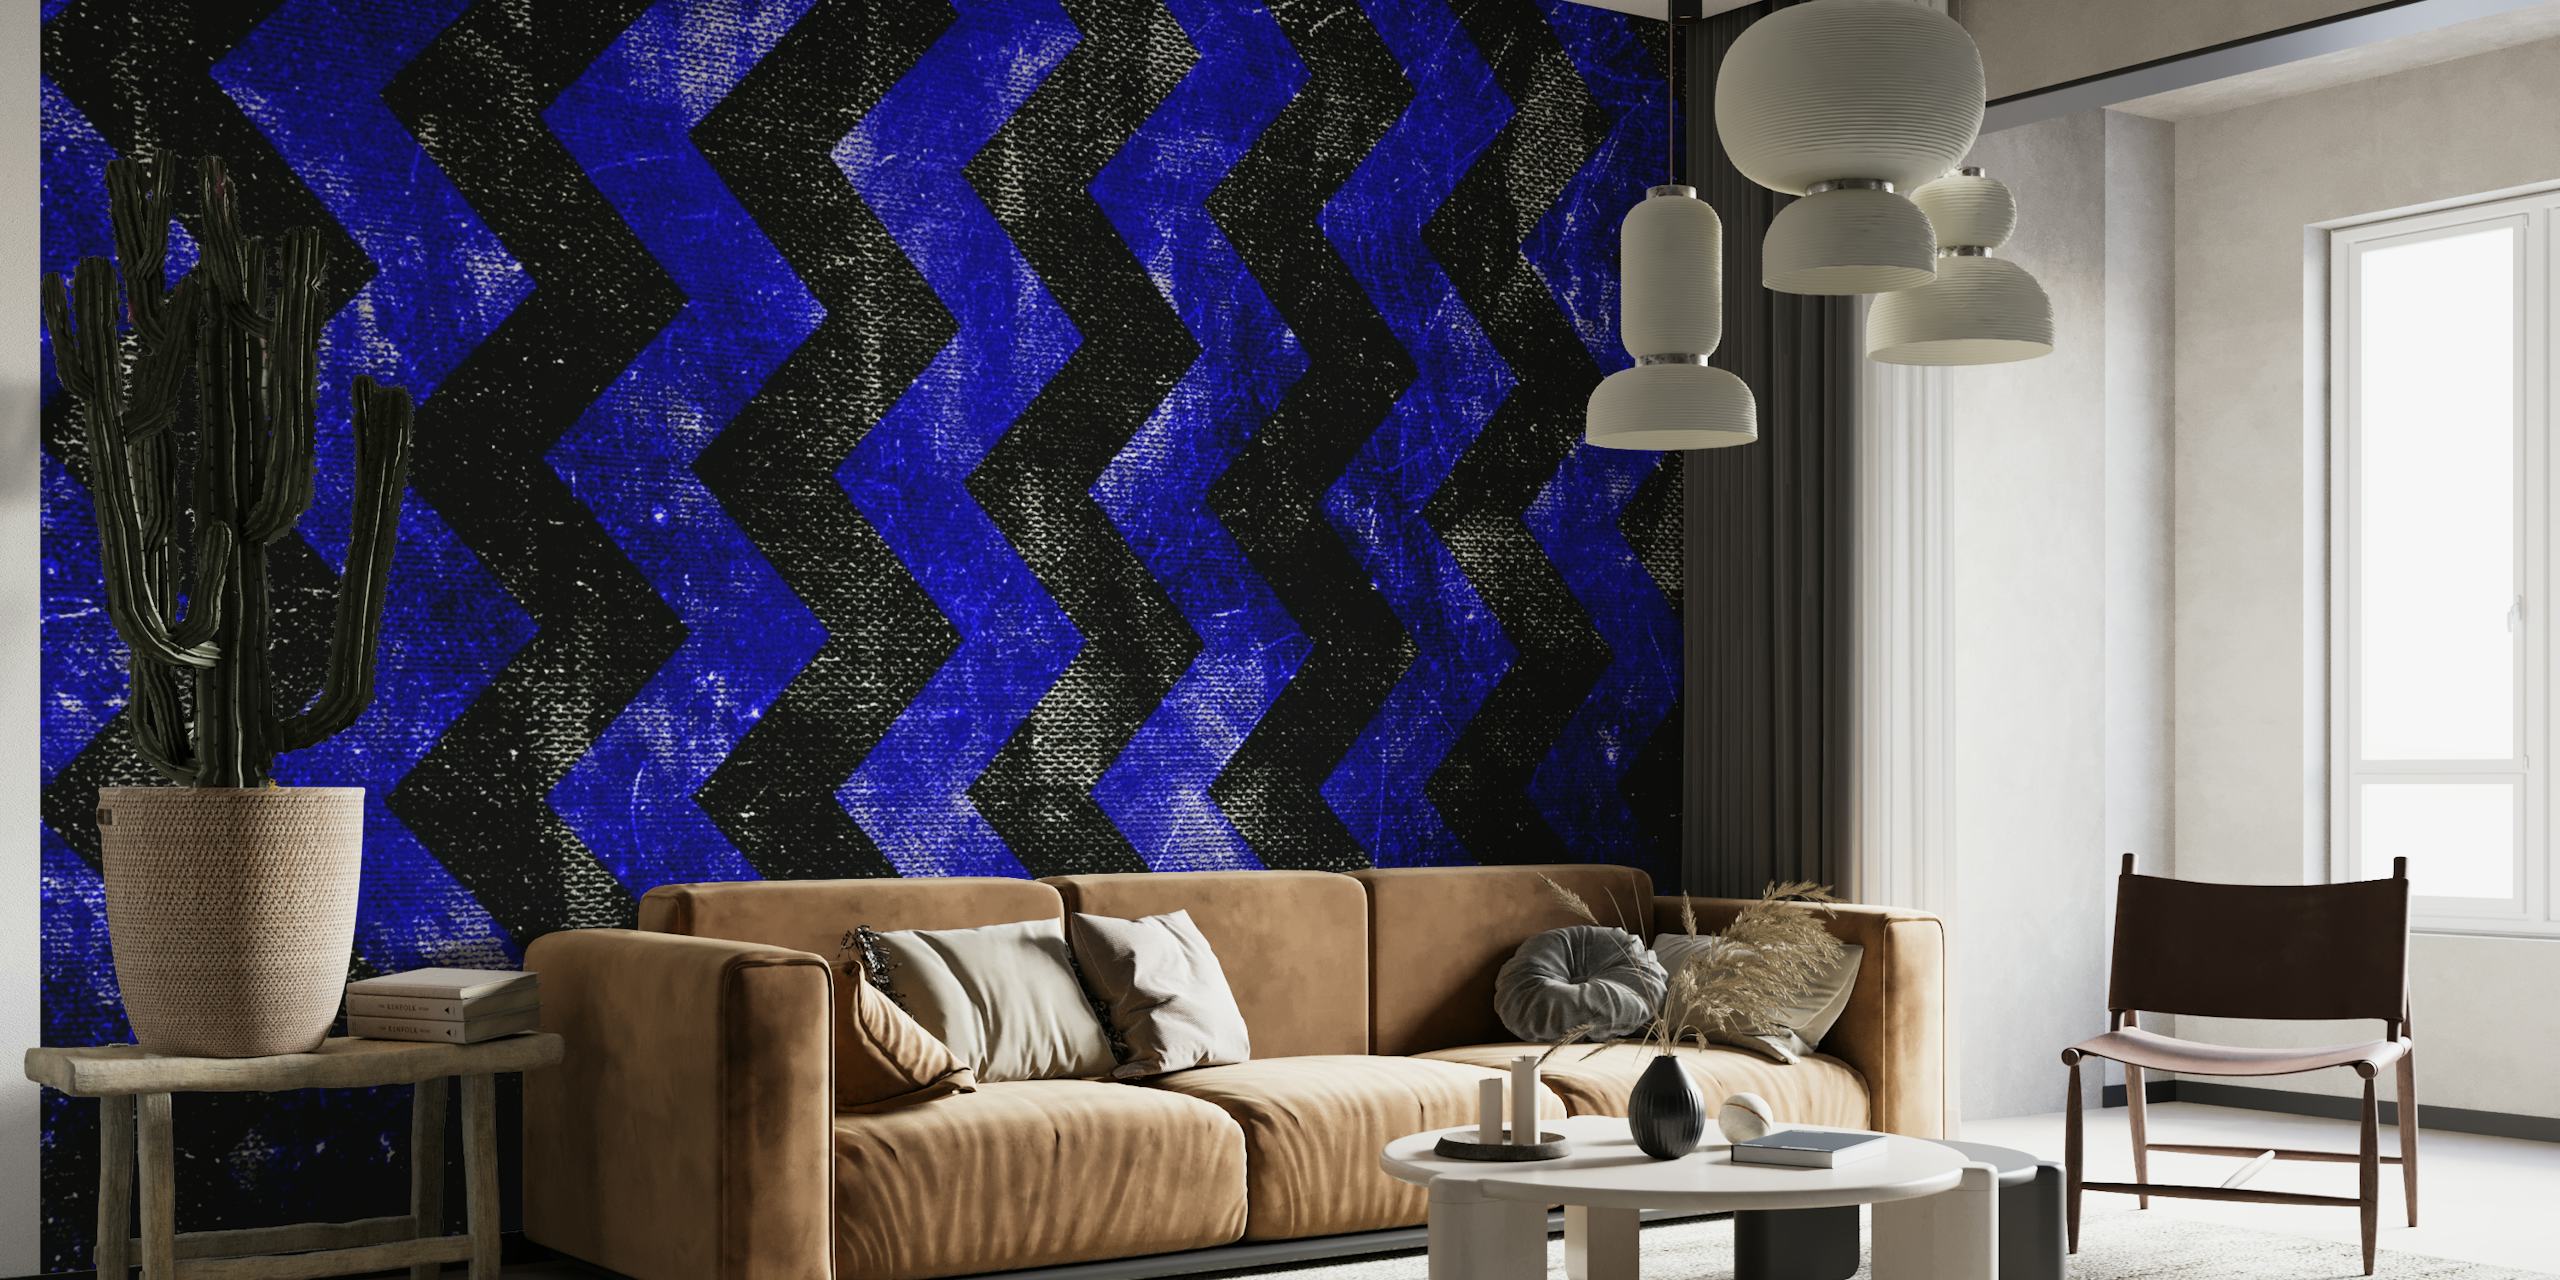 Het abstracte blauwe lijnen fotobehang creëert een driedimensionaal zigzagpatroon op een donkere achtergrond